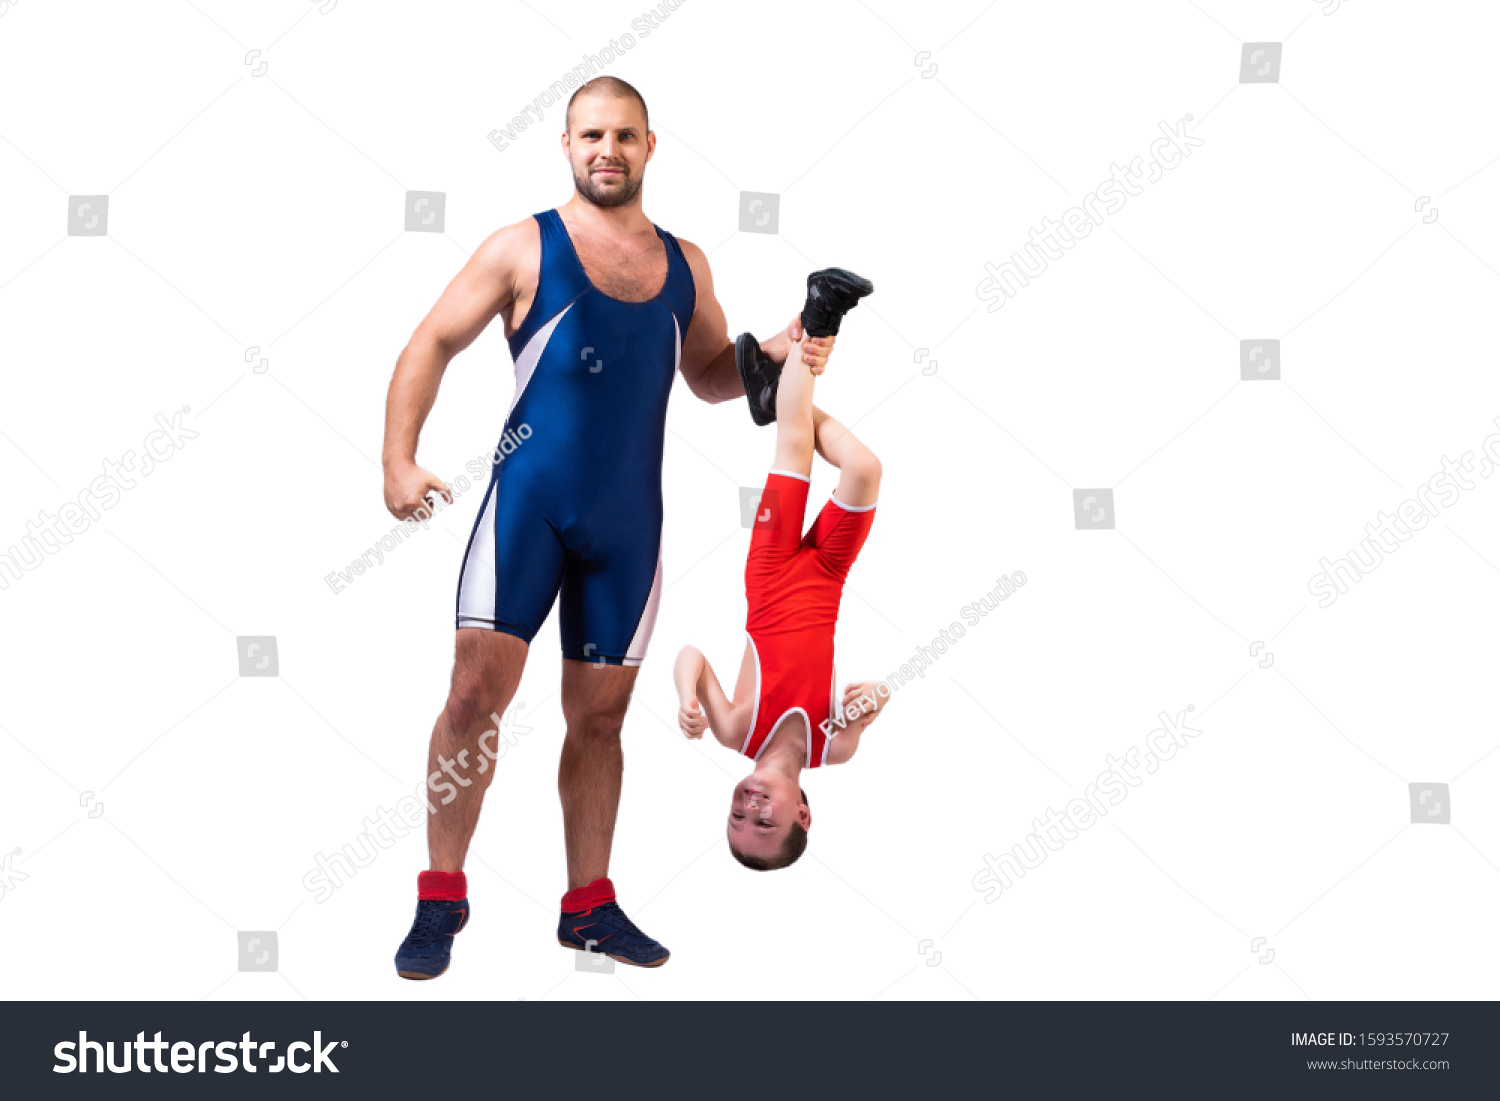 cindy hawley add photo men wrestling in tights